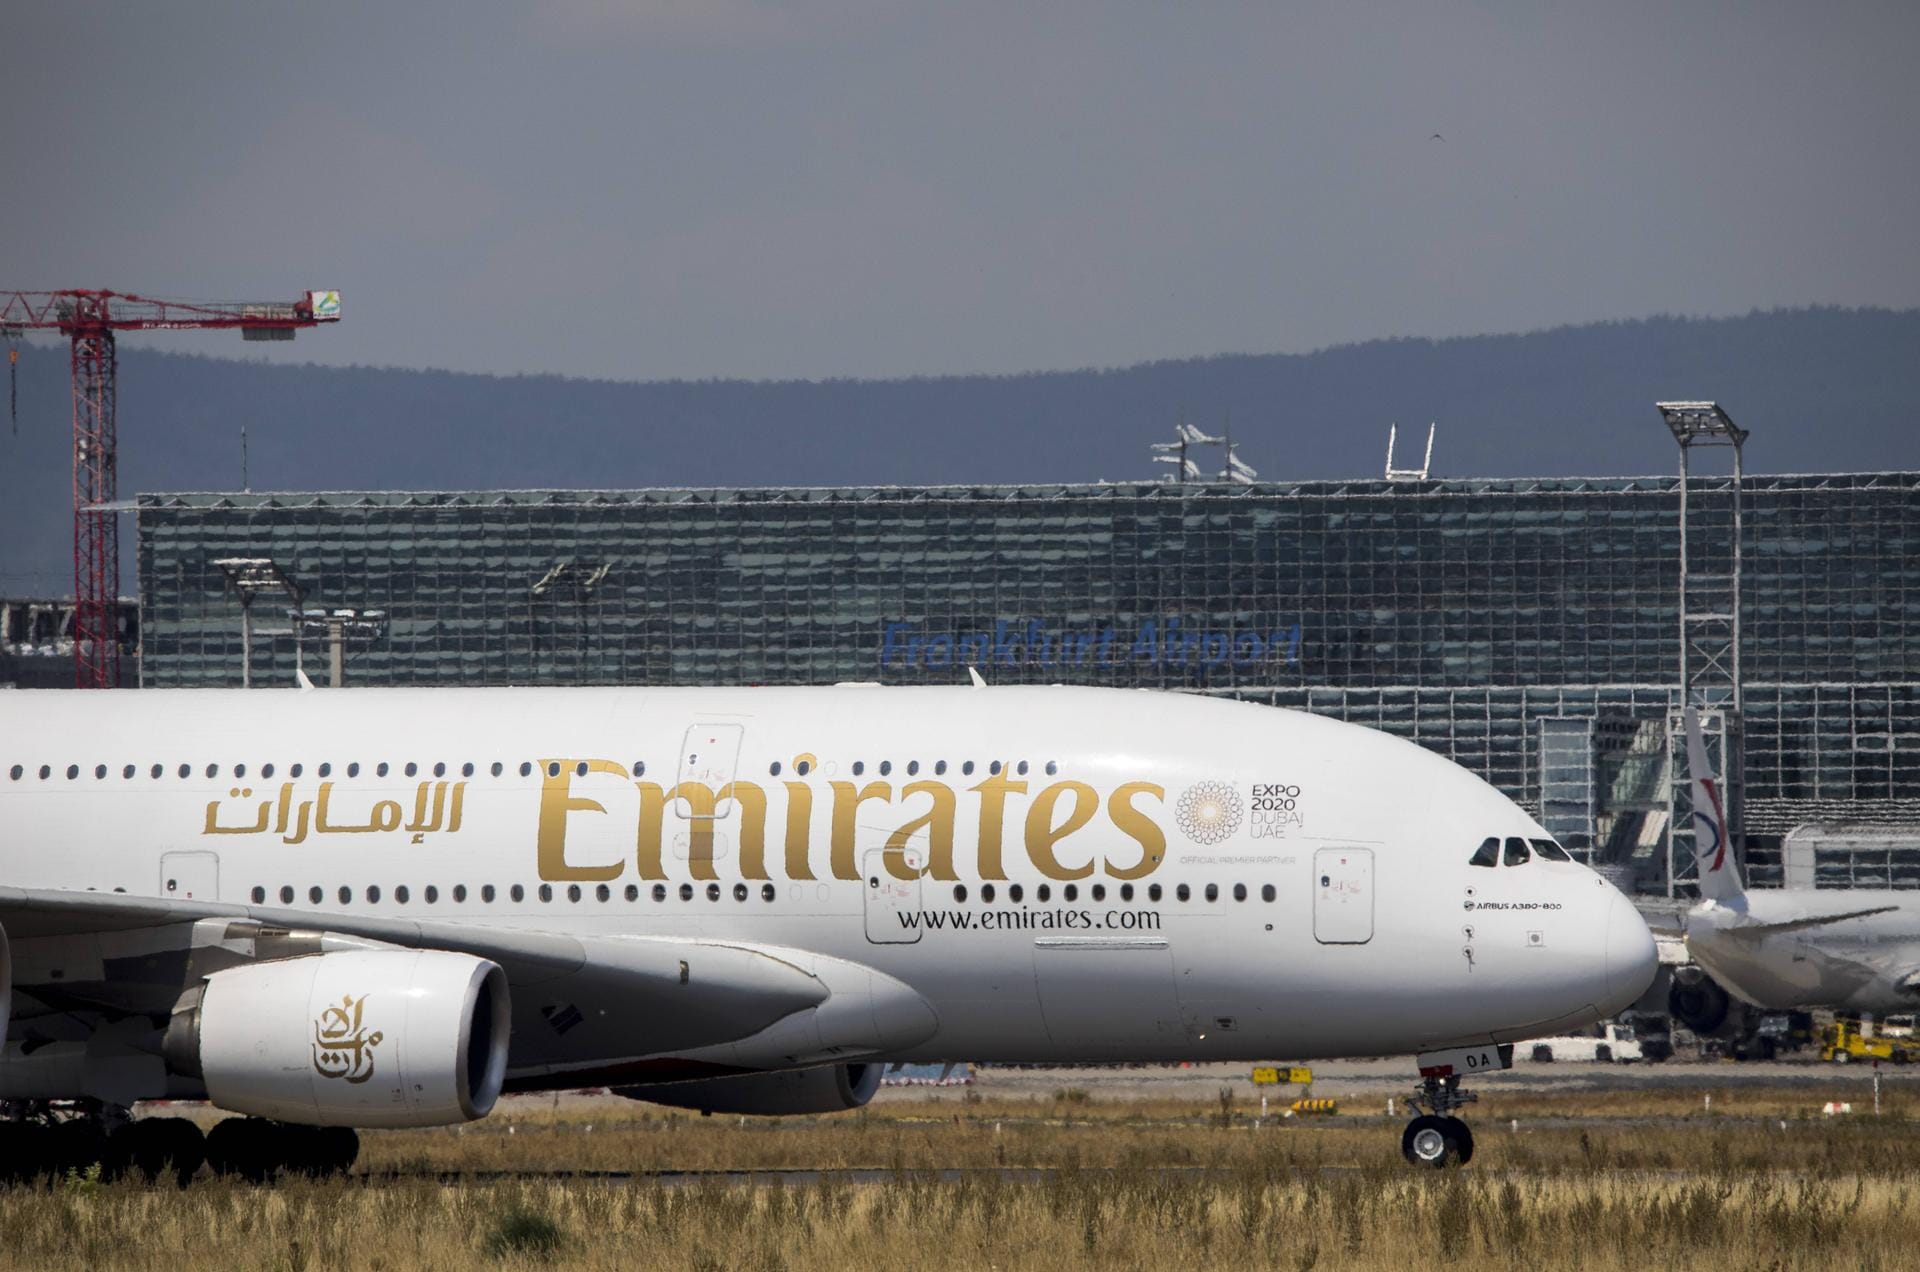 Emirates Airbus A380: Die Fluggesellschaft Emirates belegt den fünften Platz.